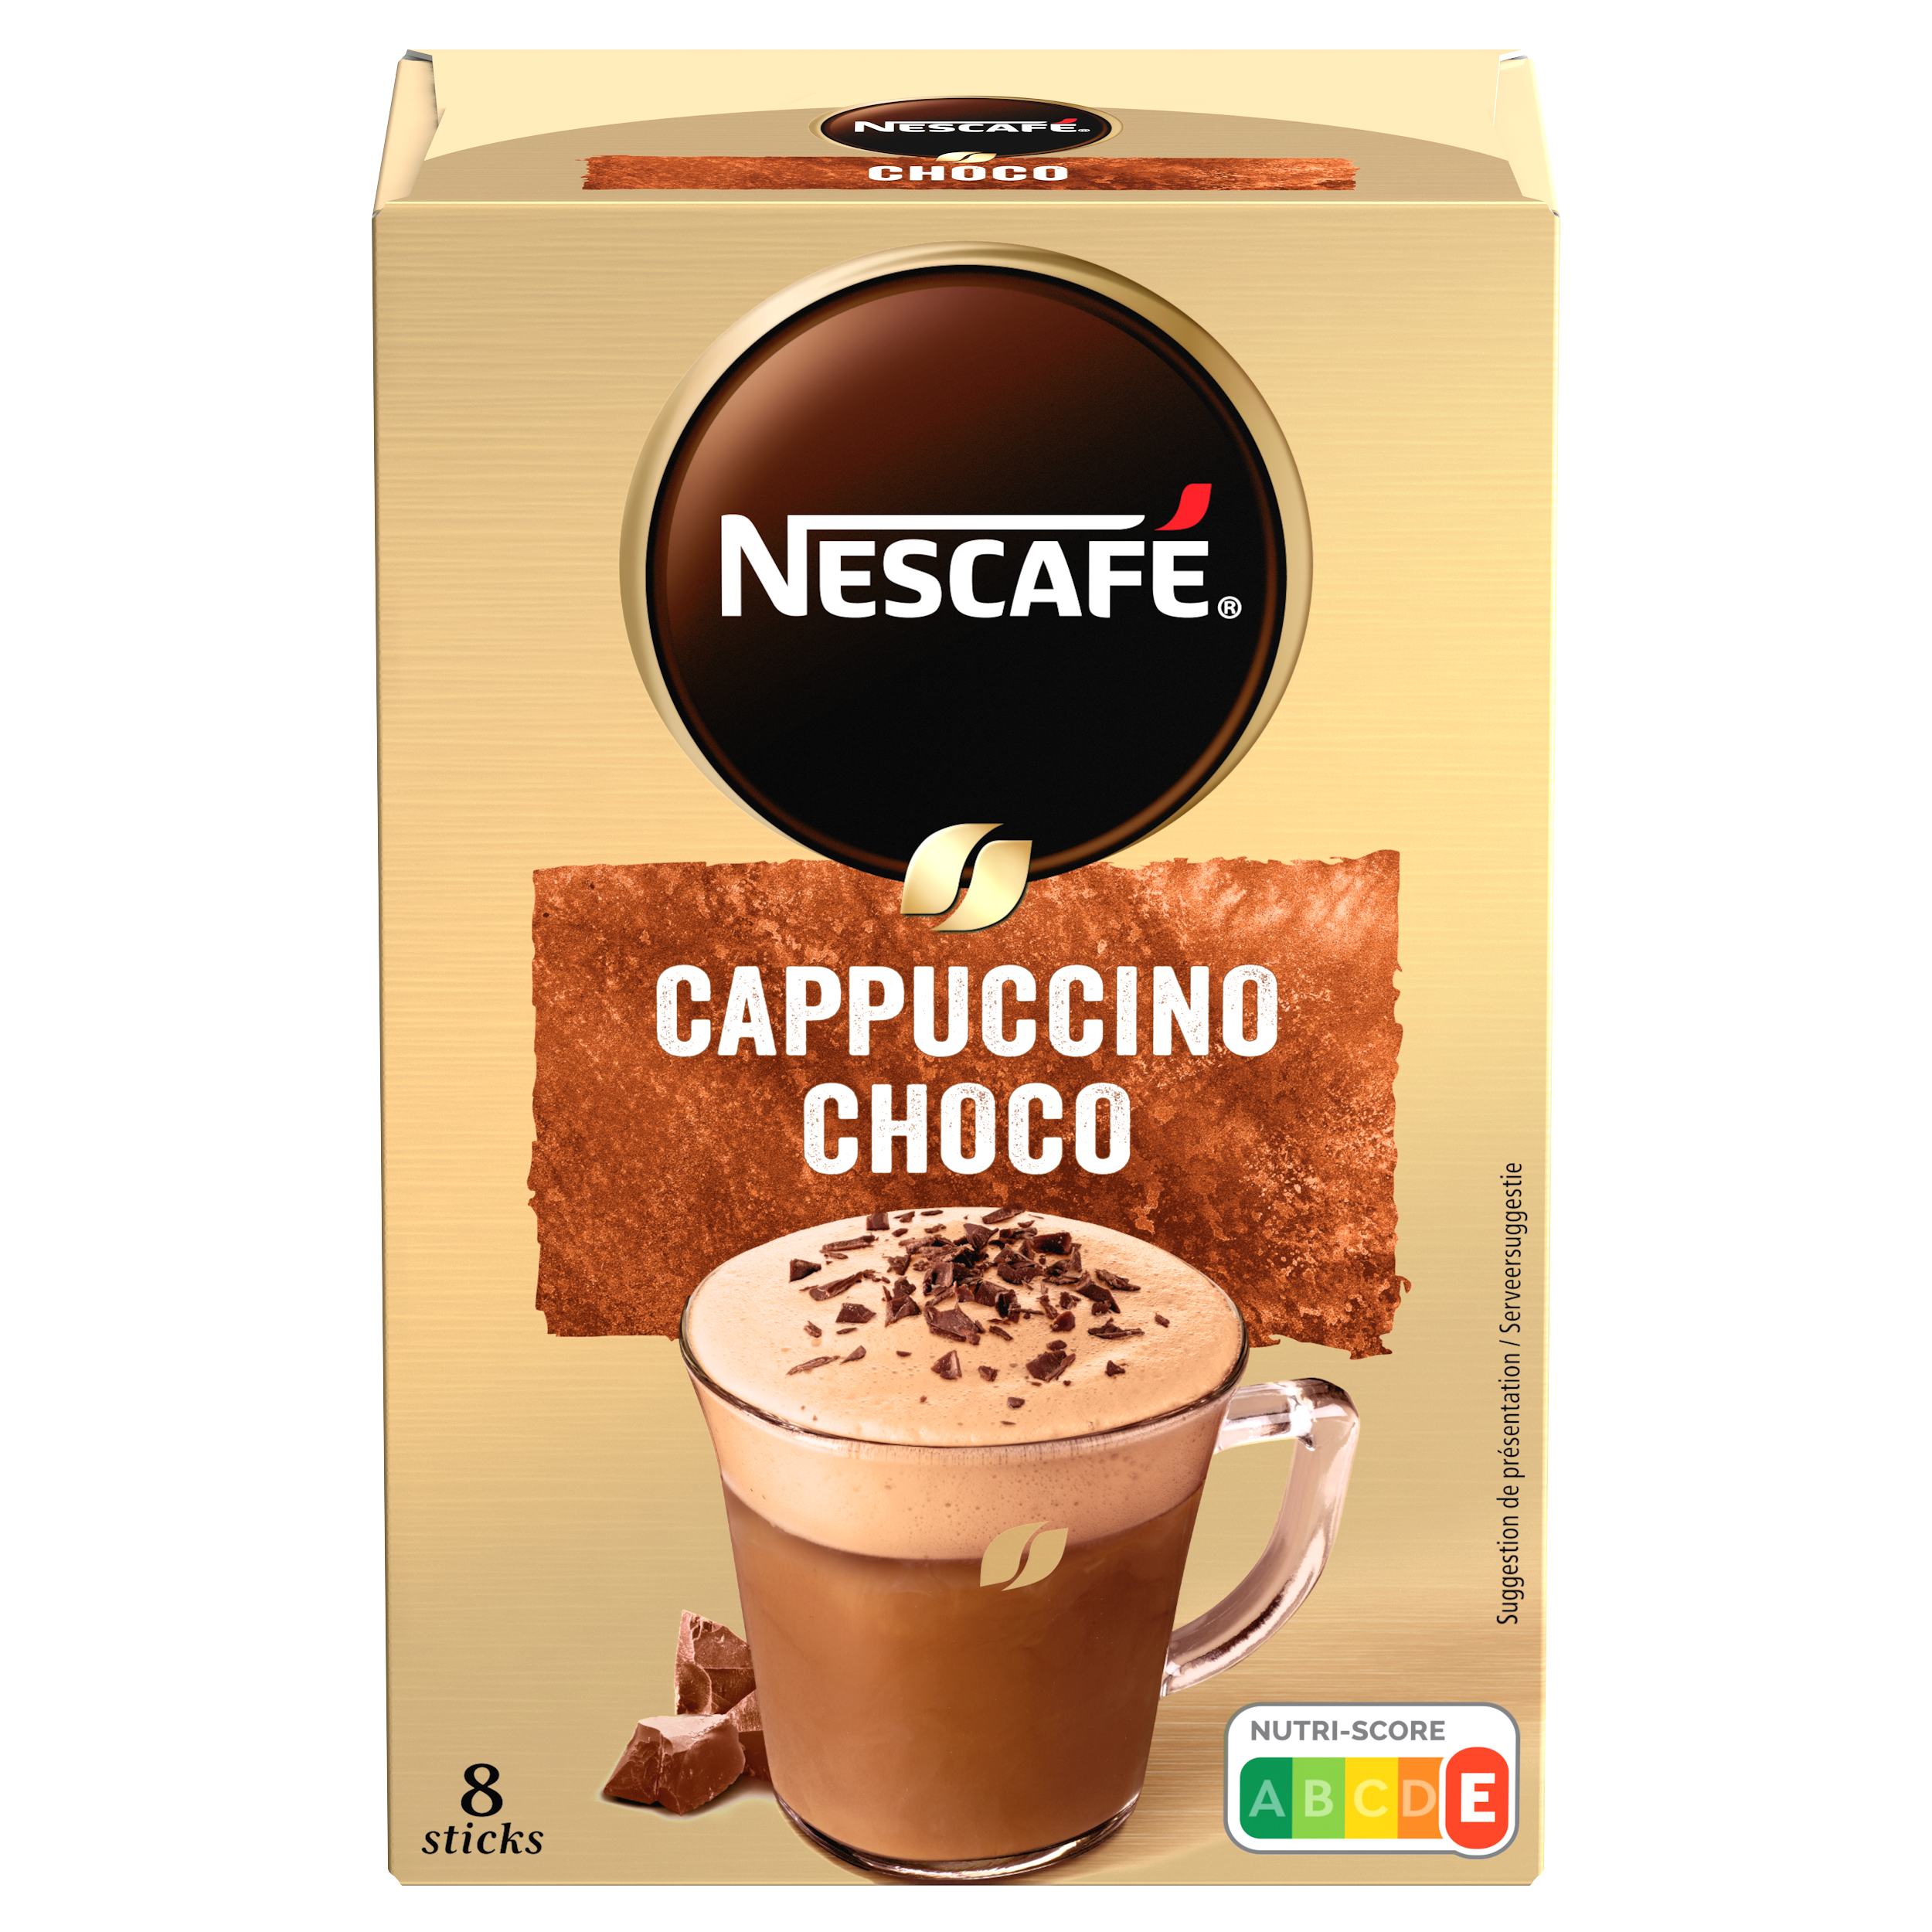 NESCAFE Cappuccino Choco, café soluble, Boîte de 8 sticks